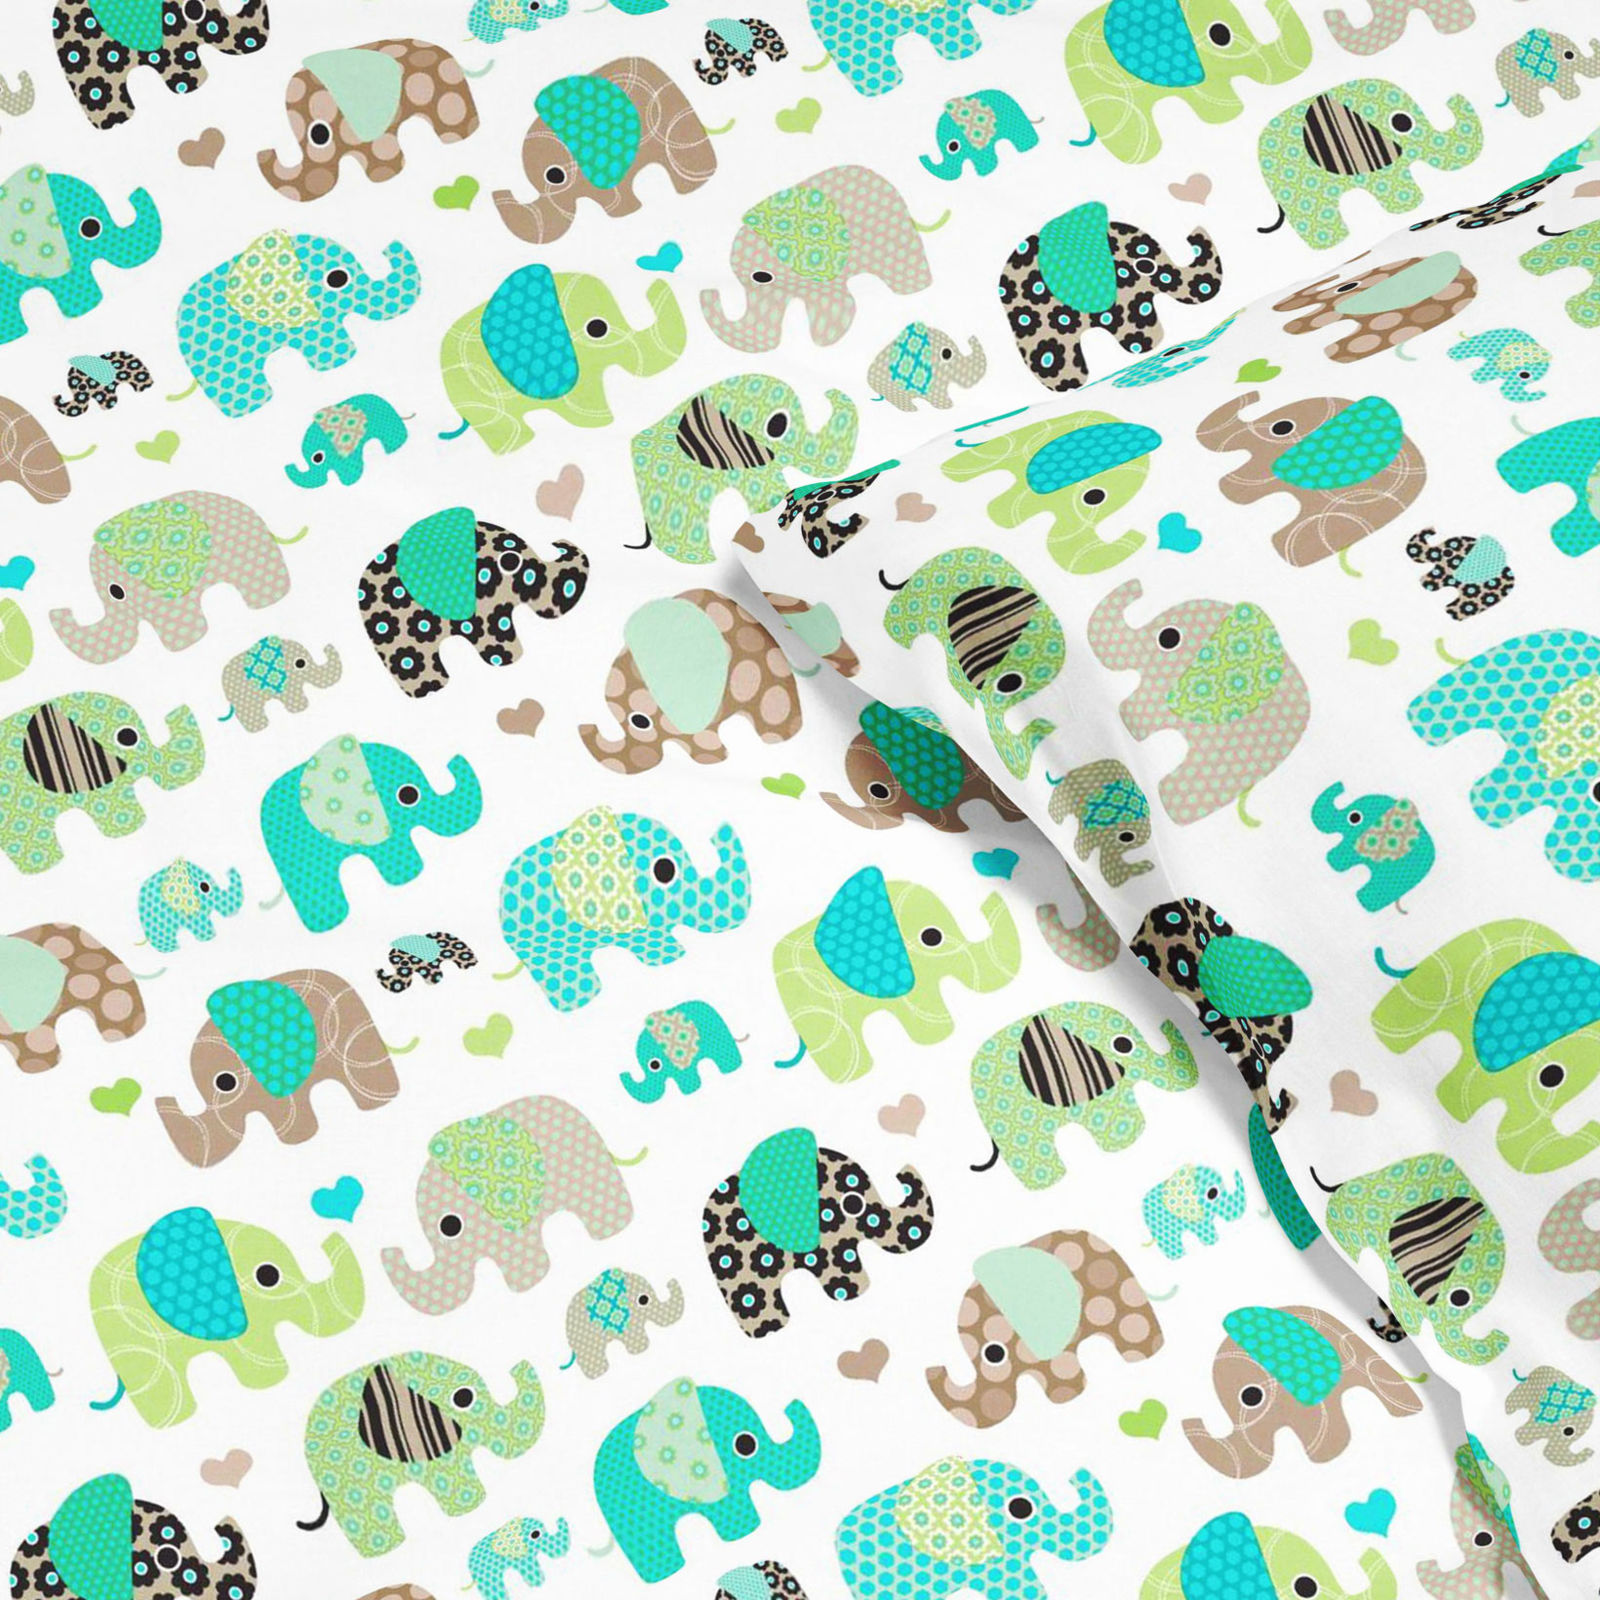 Detské bavlnené obliečky - zelenomodrí sloni